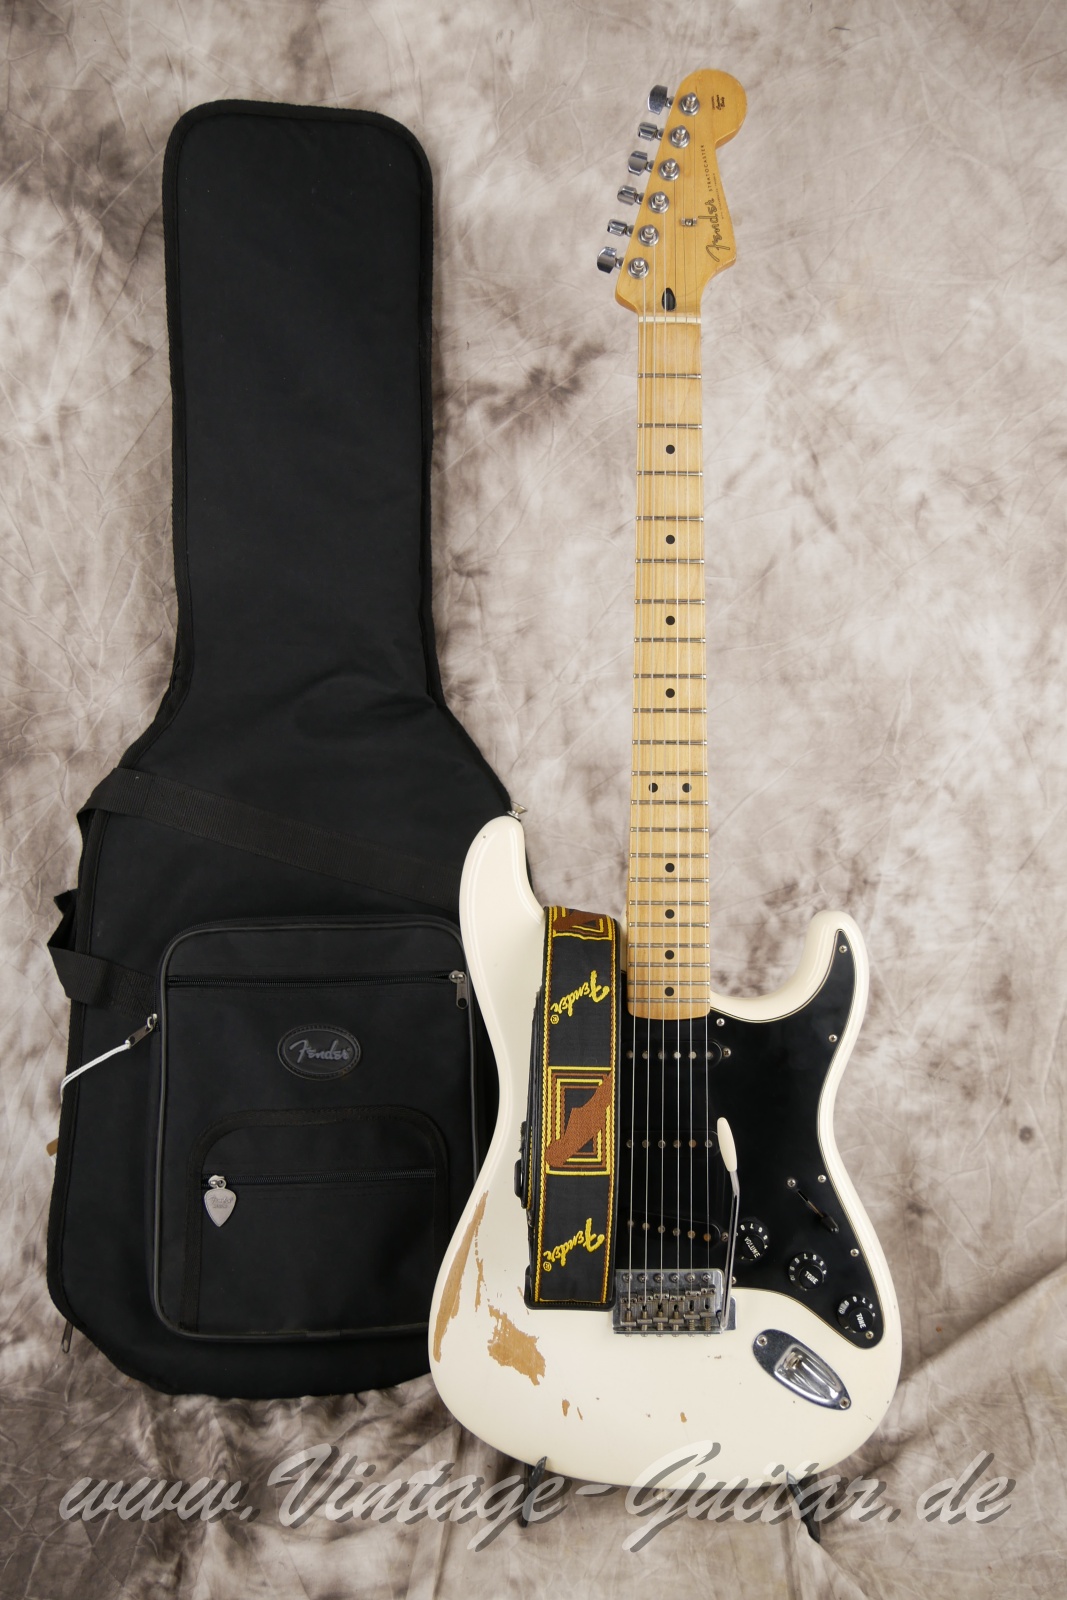 img/vintage/5656/Fender-Stratocaster-roadworn-player-series-60s-reissue-2011-olympic-white-013.jpg